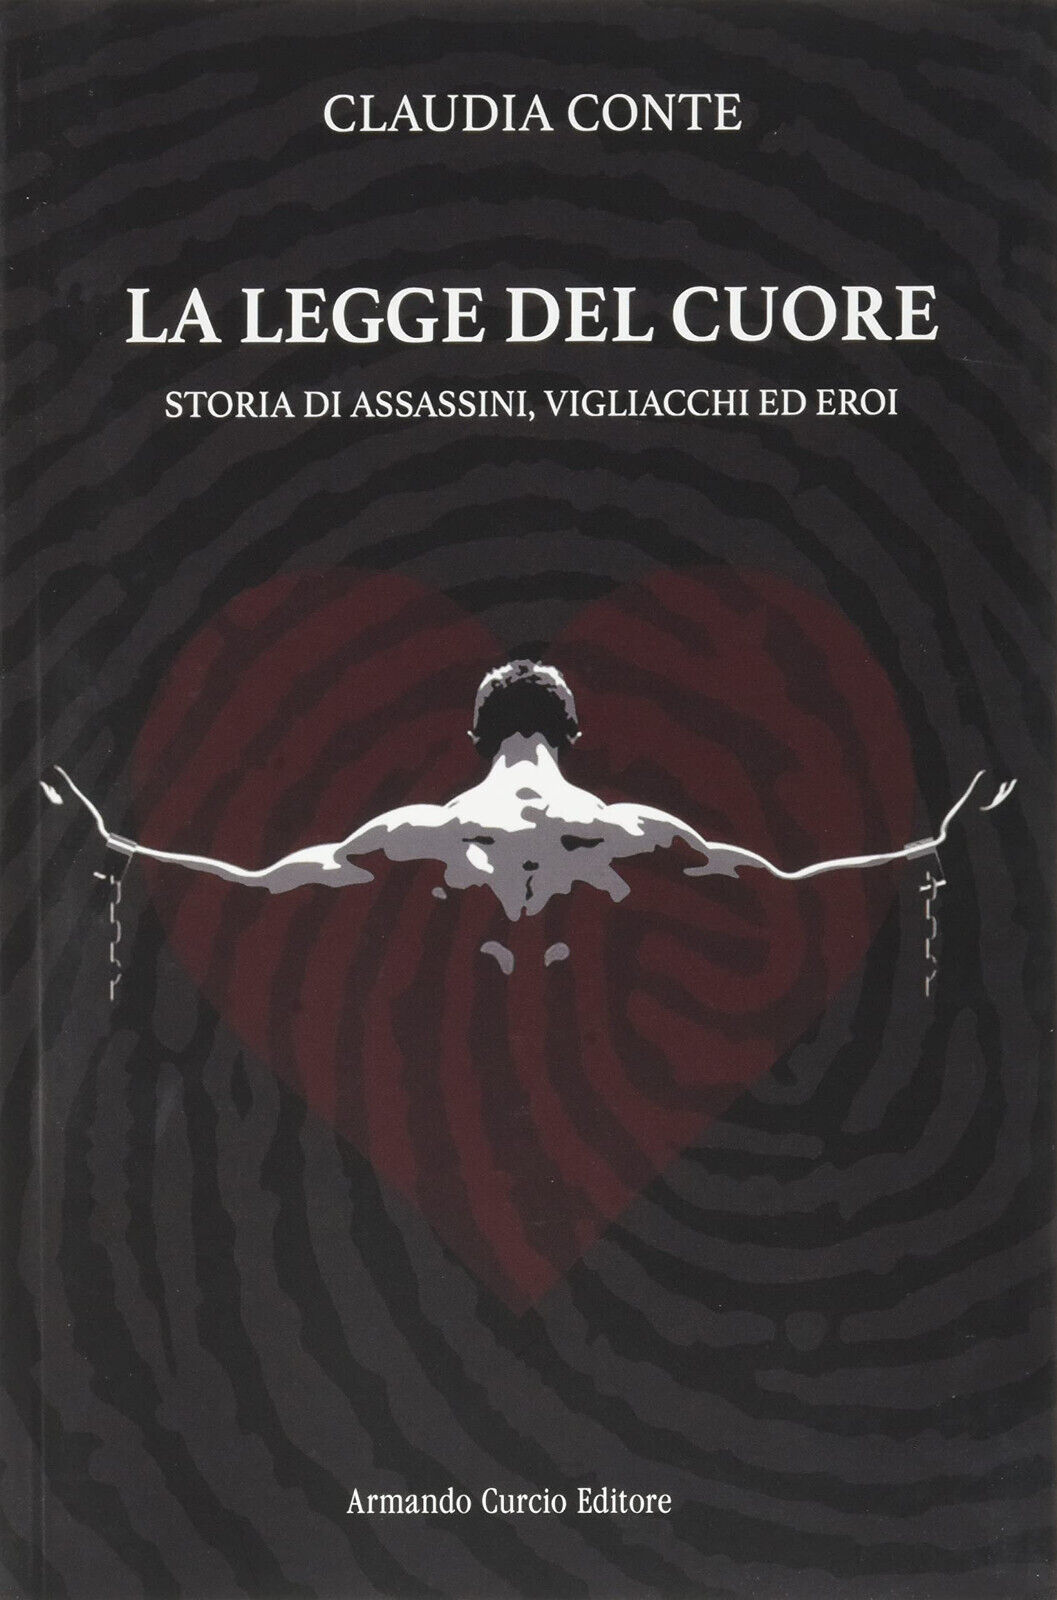 La legge del cuore - Claudia Conte - Curcio, 2021